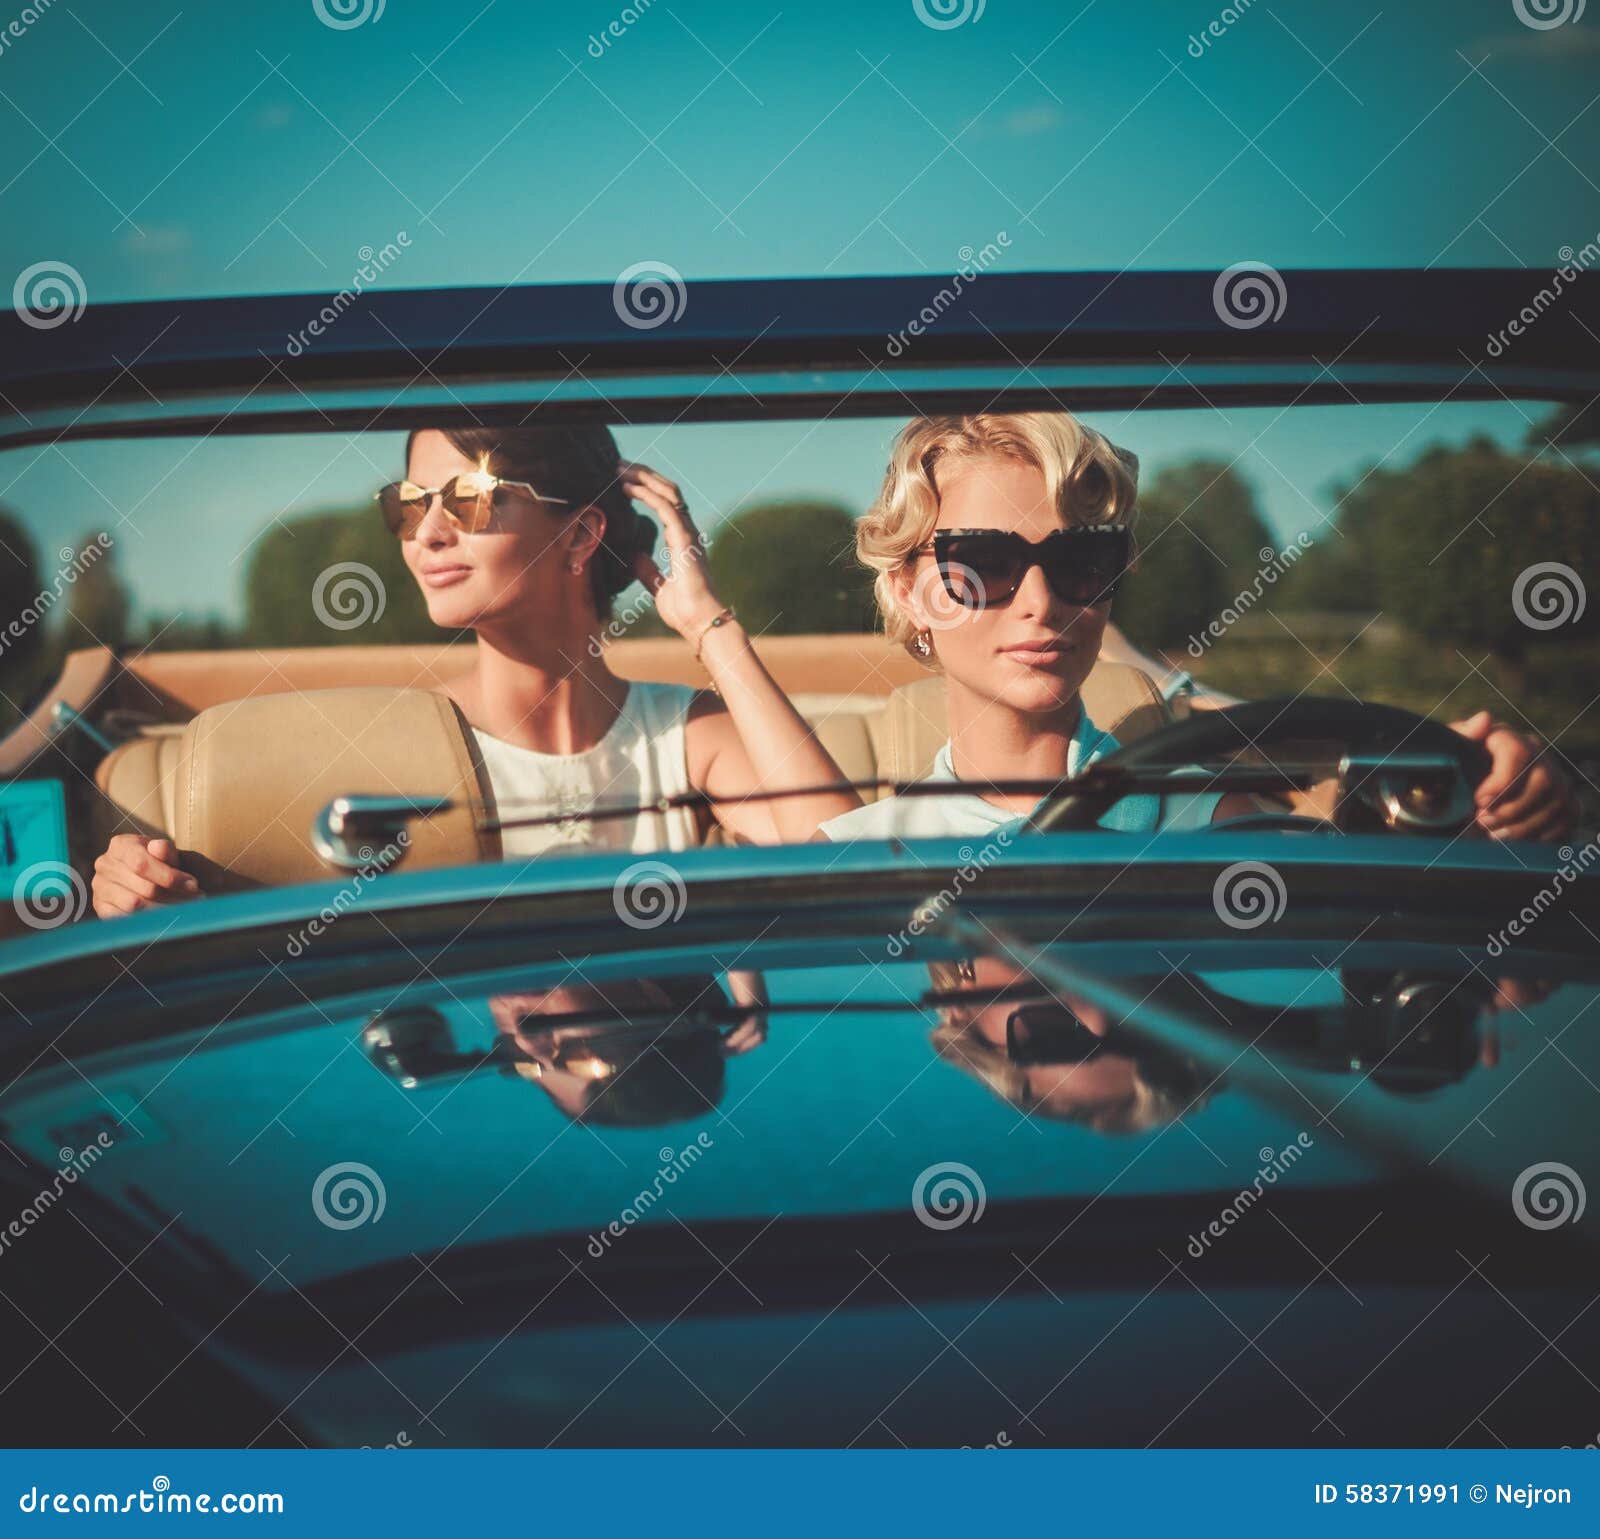 Zwei stilvolle Damen in einem klassischen Kabriolett